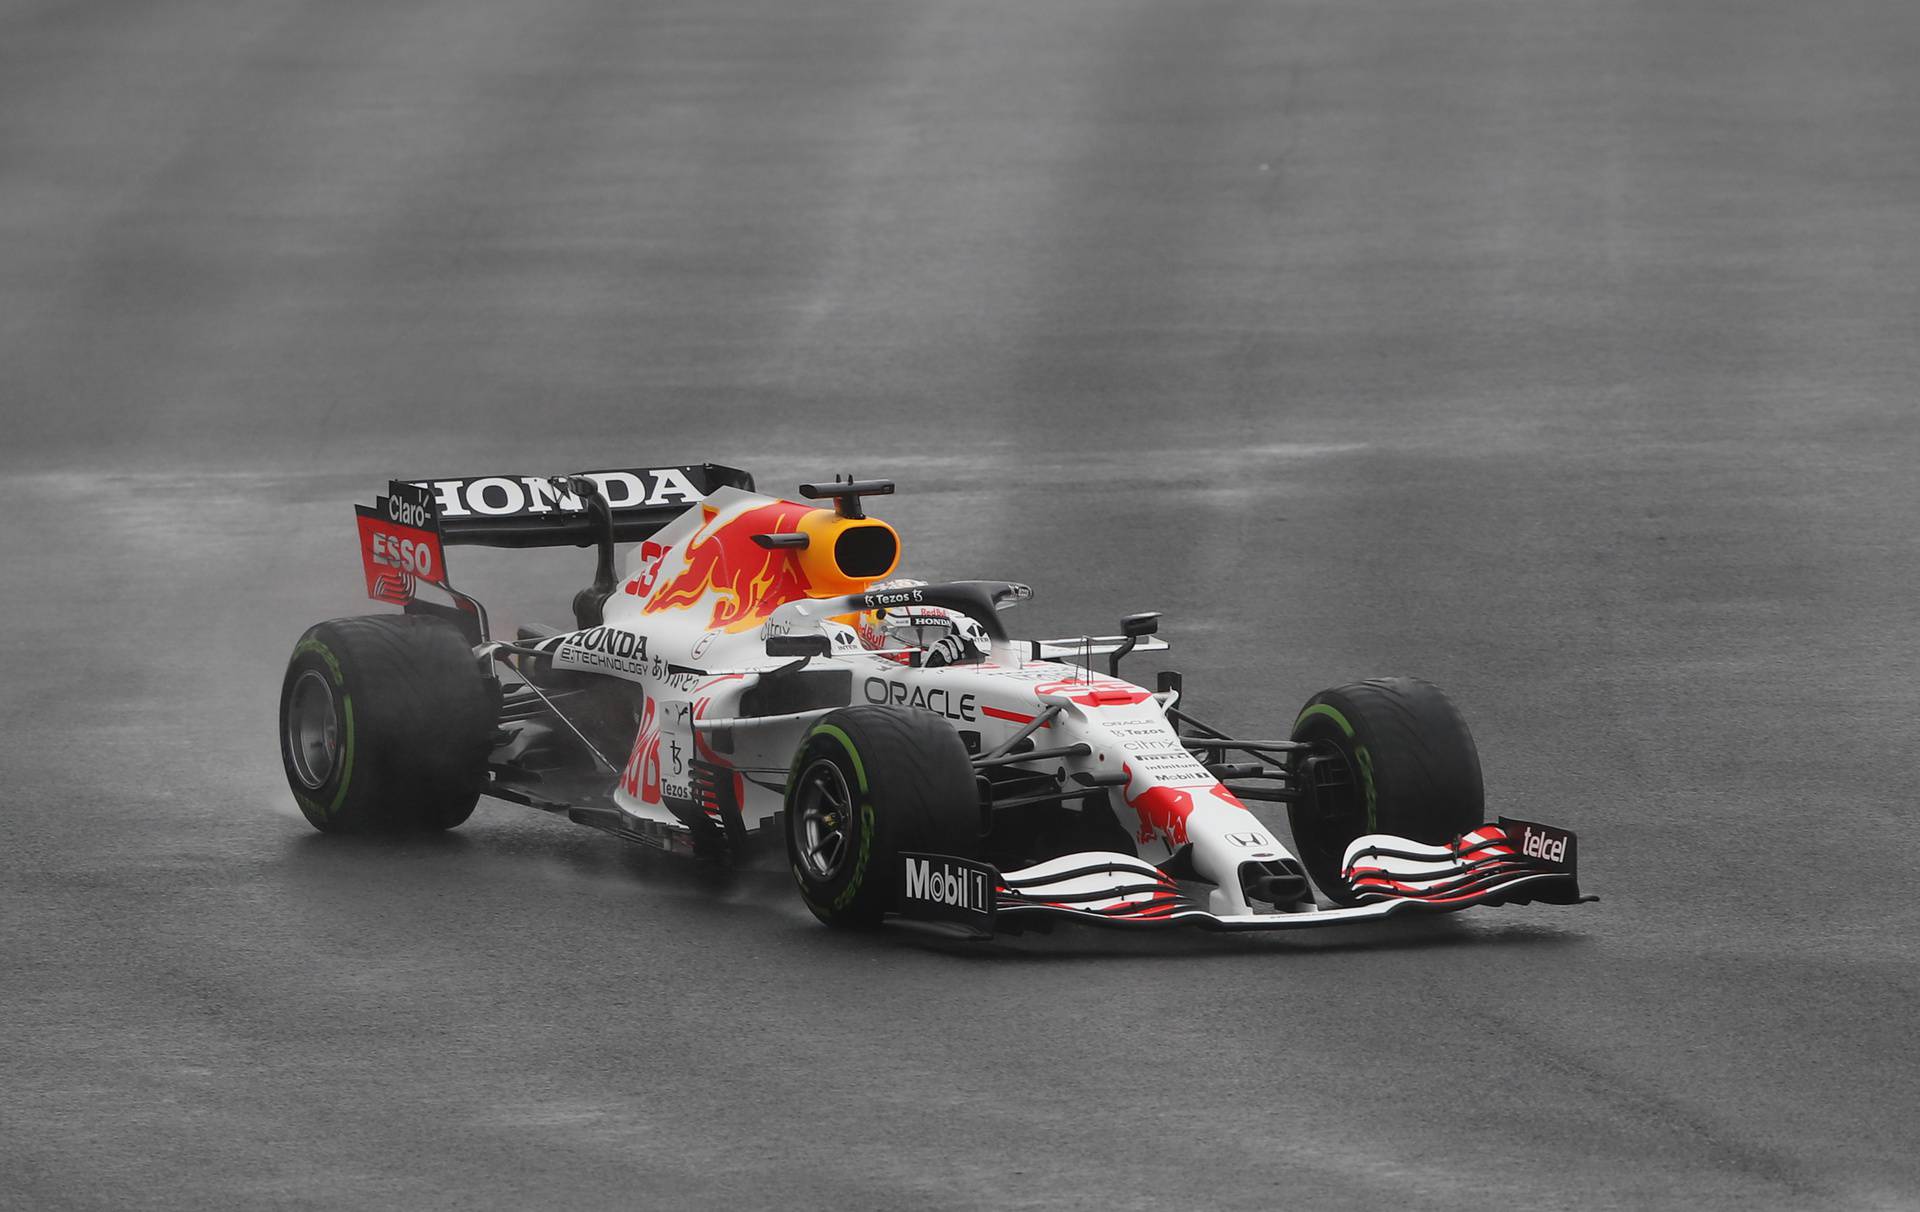 Turkish Grand Prix